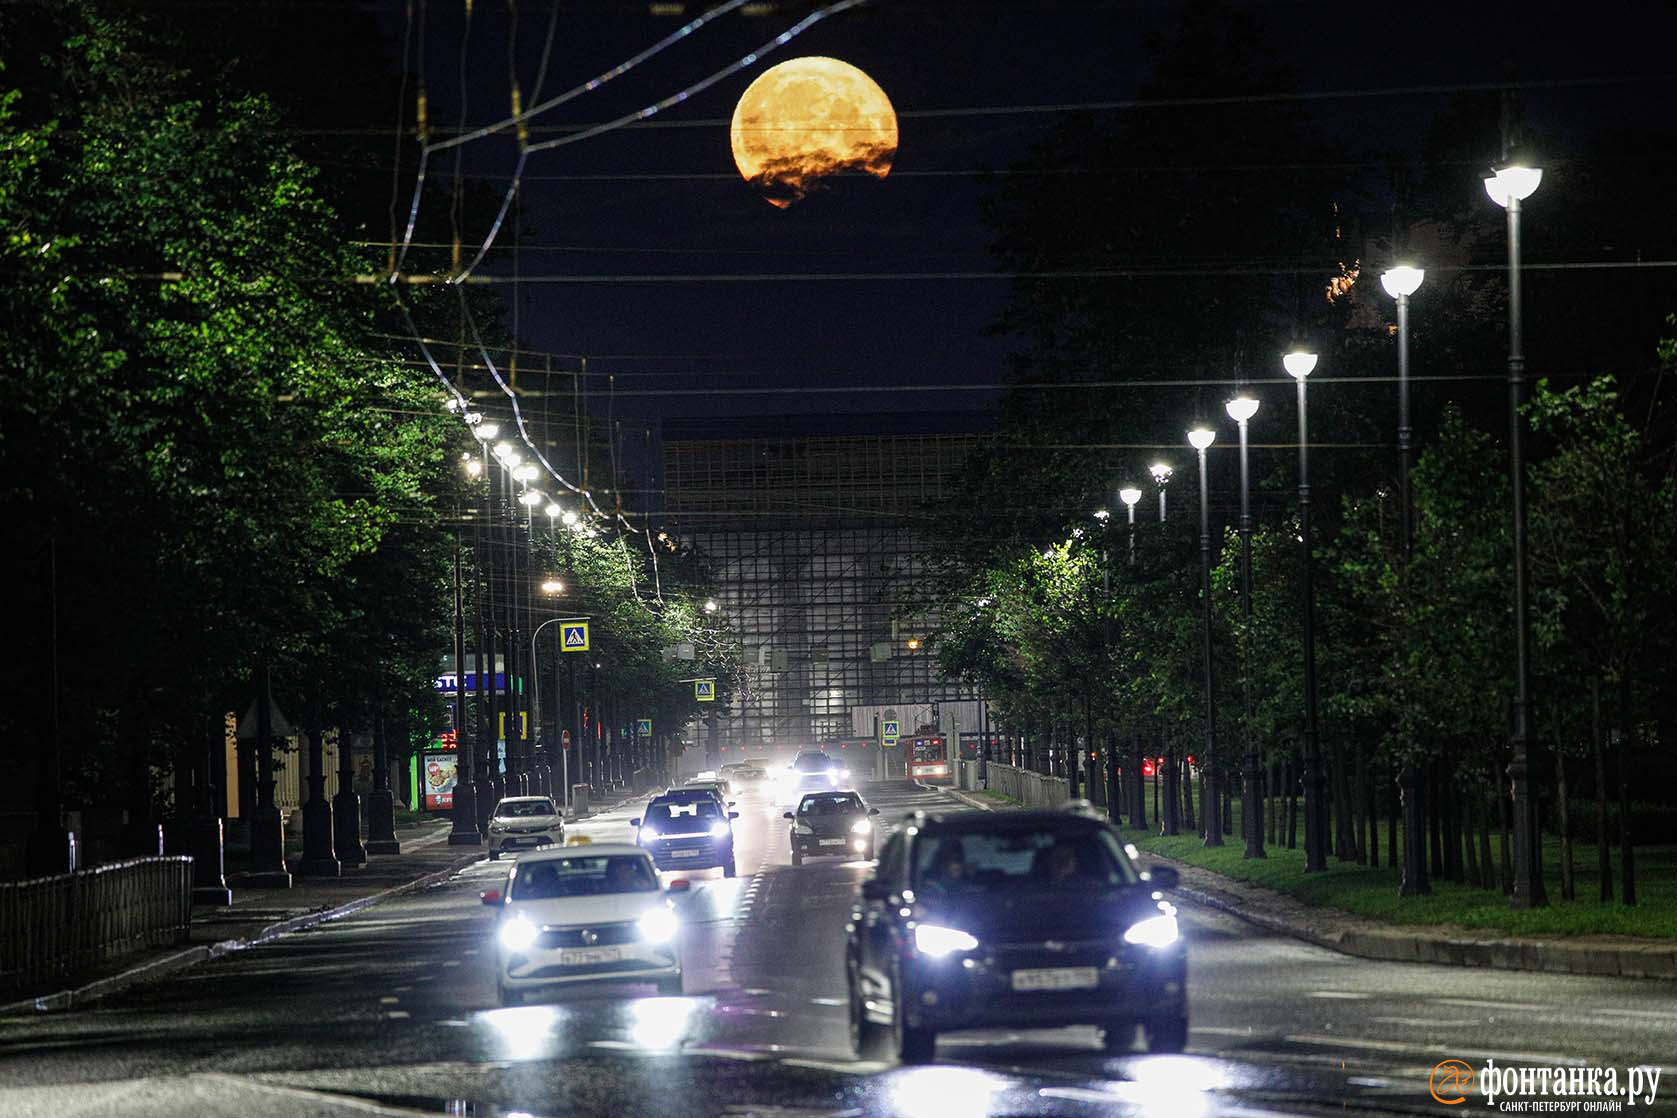 Фото ночи: необычно яркая луна в небе над Петербургом